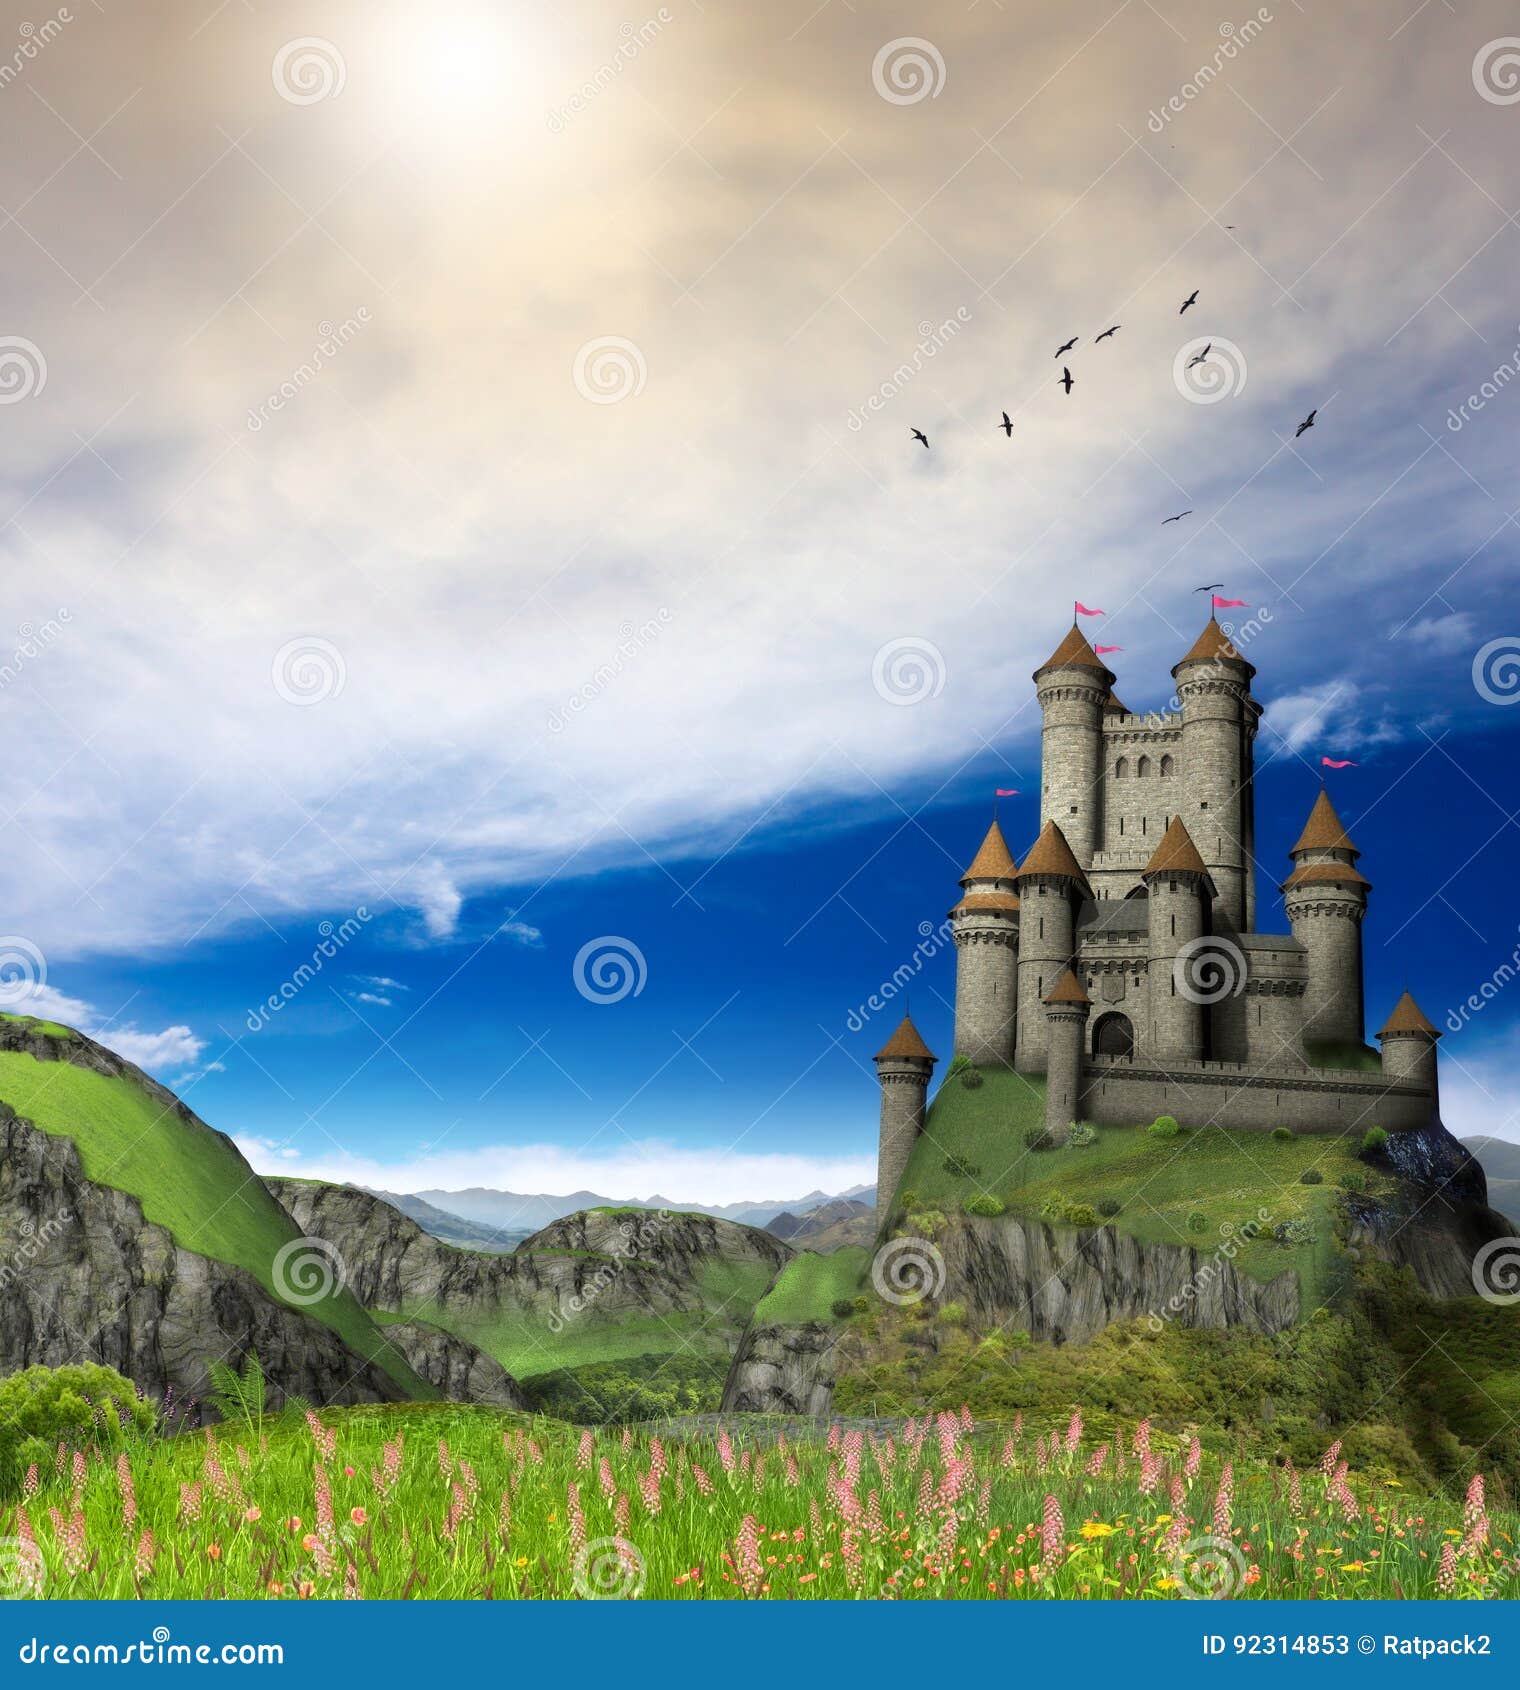 7 ideias de Point and Click Games  castelo da fantasia, paisagem